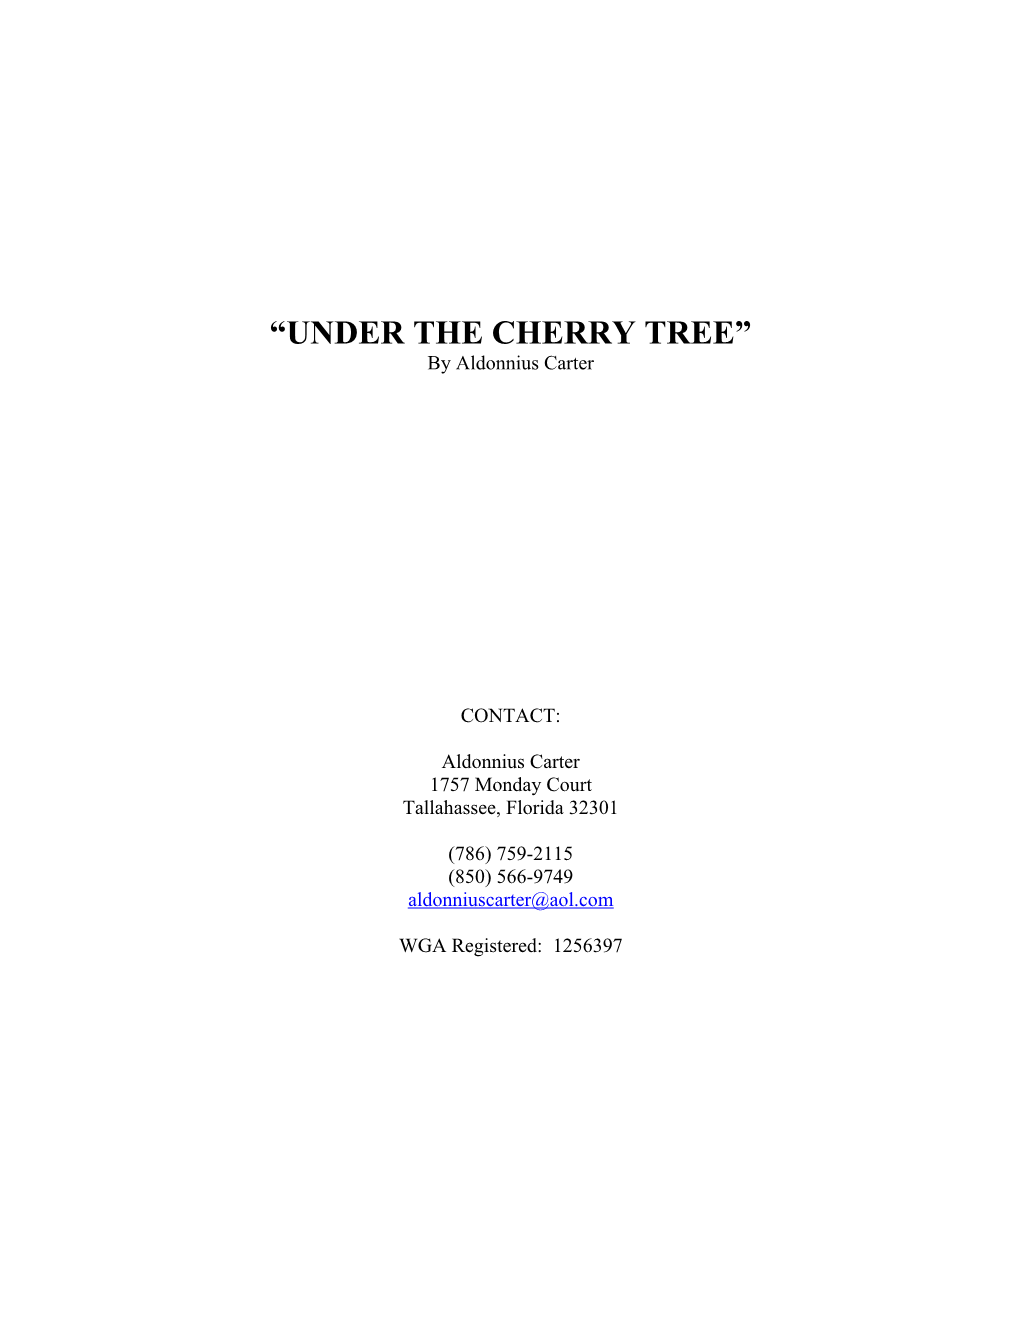 Under the Cherry Tree